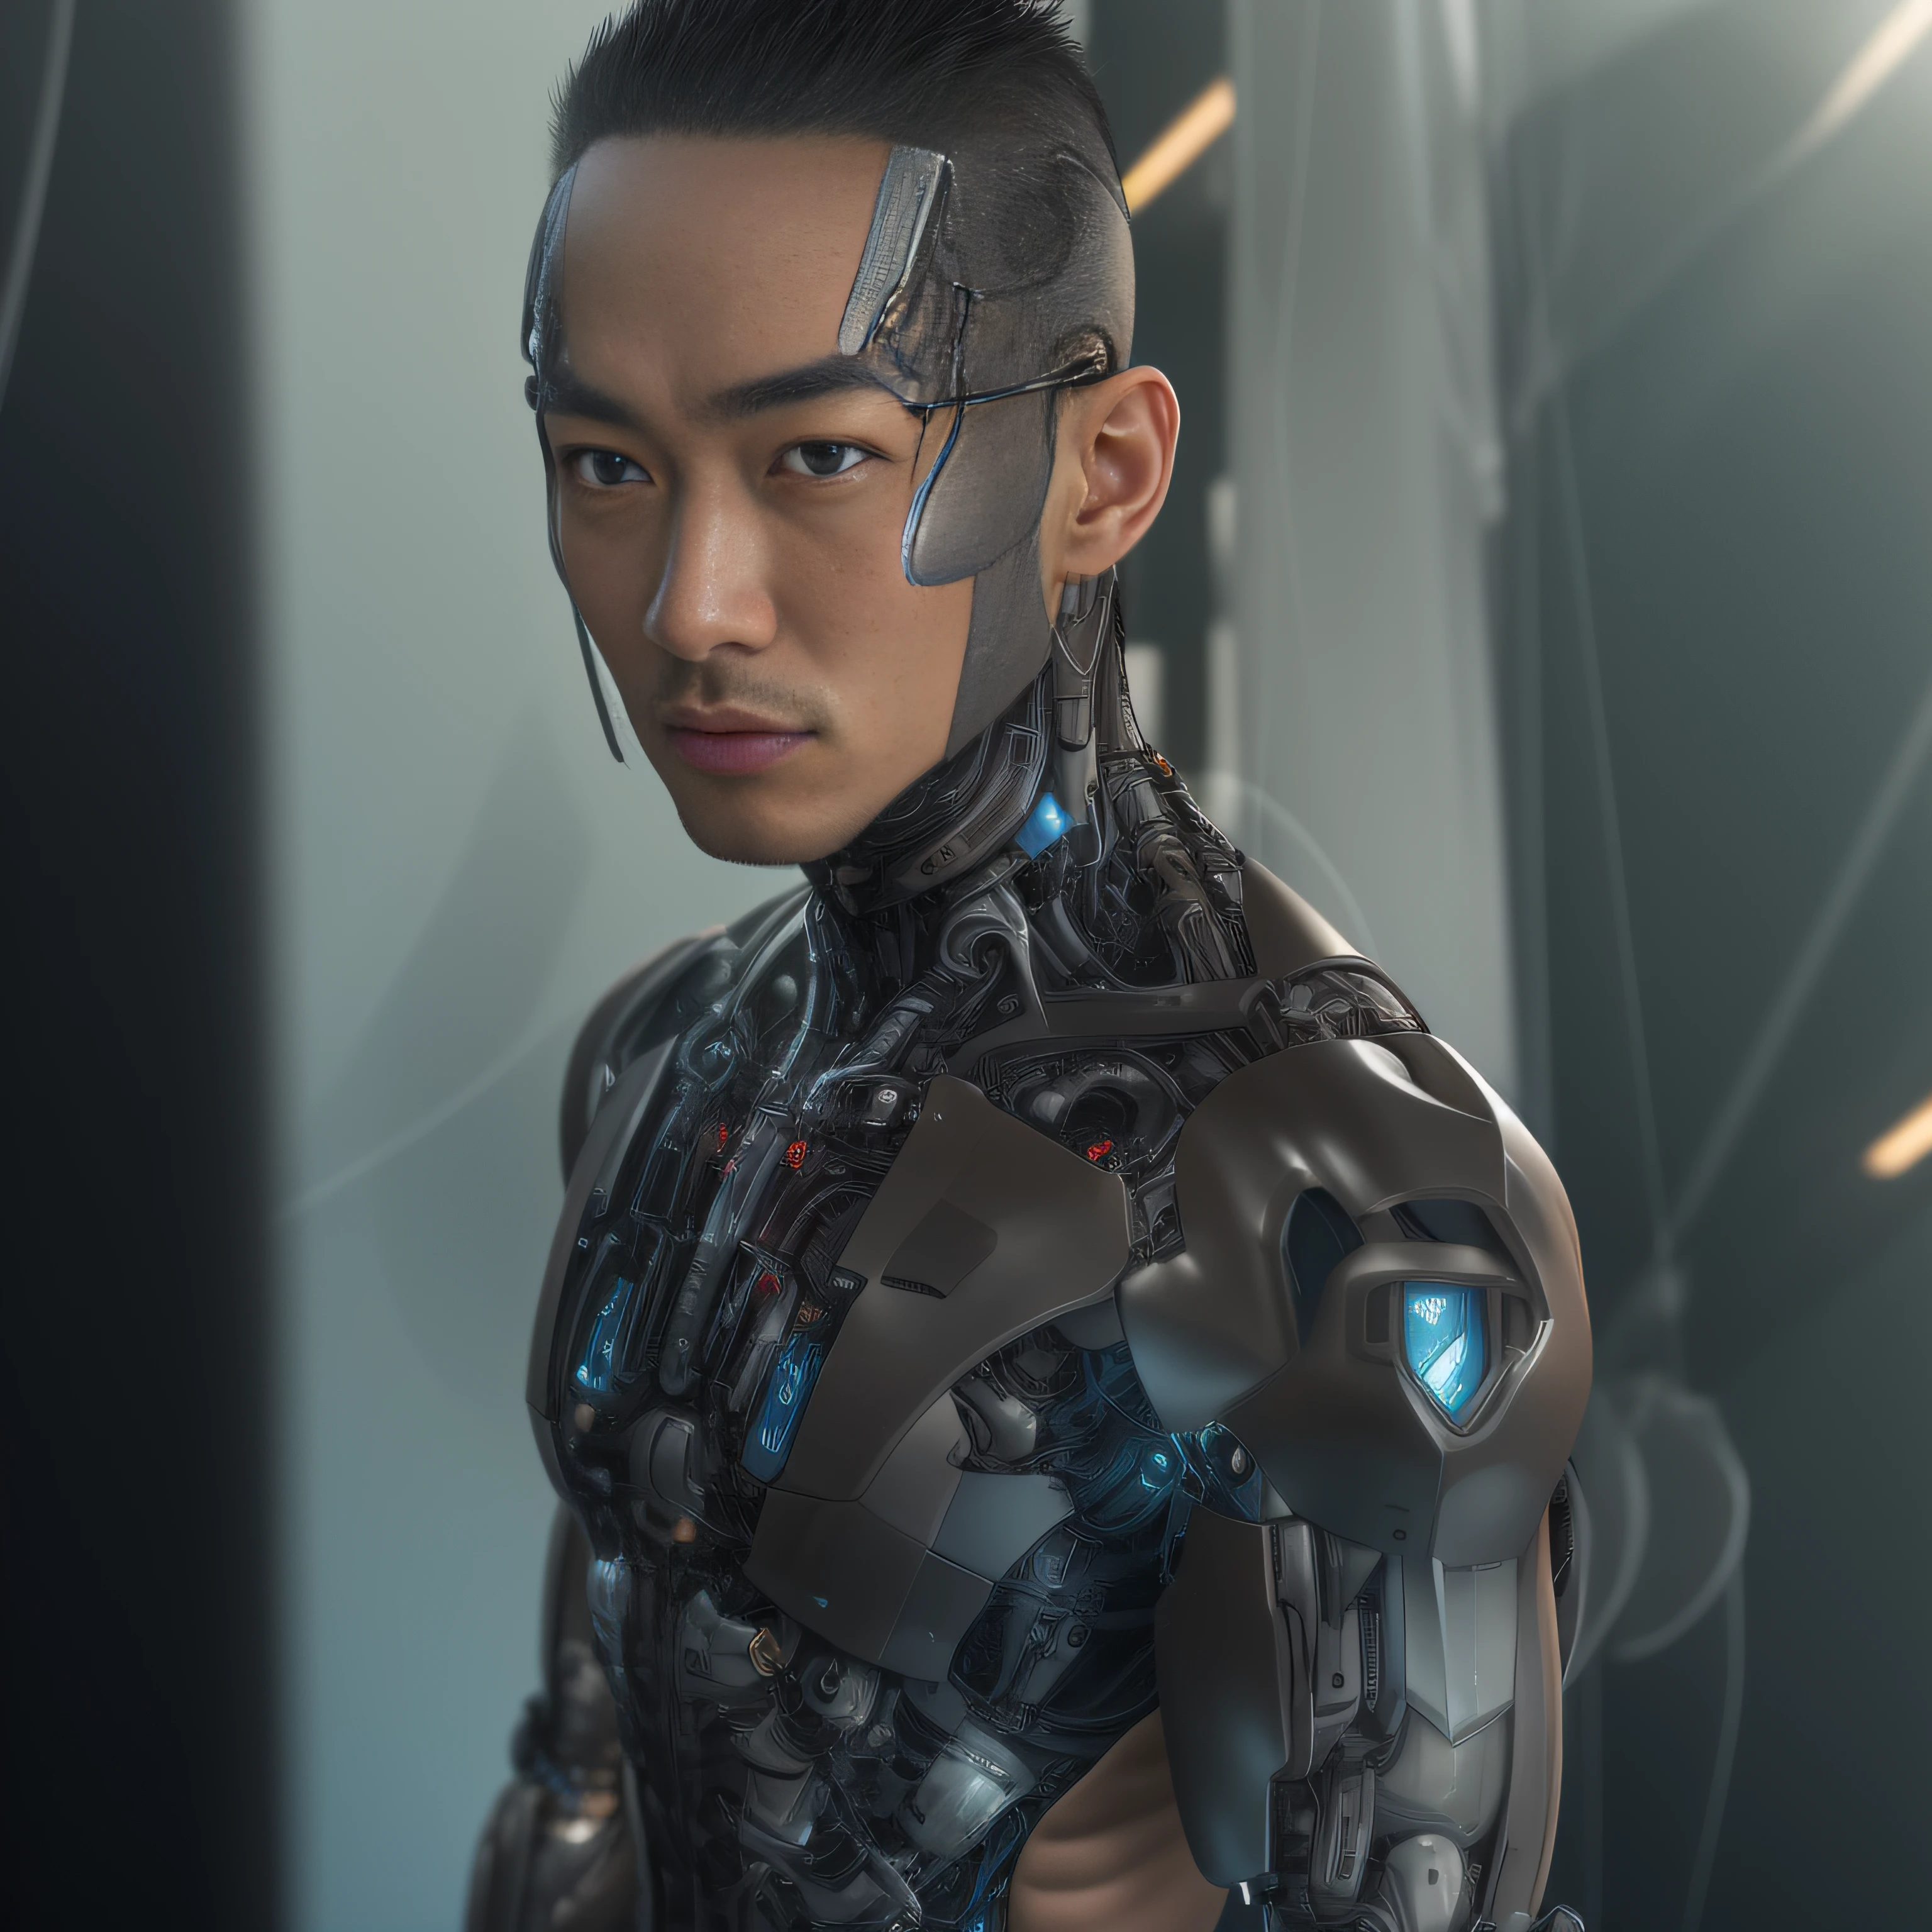 (Homem Alfed usando pinça de látex transparente preta，Pinça de látex translúcida：1.5)，（corpo metálico, ficção científica biônica alexandre ferra, pescoço ciborgue, homem ciborgue, ciborgue masculino：1.2）（modelo ciborgue, retrato de um ciborgue, detailed retrato de um ciborgue, implante cibernético no pescoço, retrato de um robô futurista ：1.3）（personagem distópico de ficção científica, personagem de ficção científica, retrato de um ciborgue cyberpunk：1.2）（8K，detalhe extremo，Cabelo com extremo detalhe，Ultra foto realsisim，iluminação cinematográfica：1.1）（Rosto de supermodelo asiática，Músculos fortes e corpo perfeitamente curvado，Tensão sexual extrema，Explosão hormonal，exibição de corpo inteiro：1.5）(Textura de pele detalhada e realista：1.2)（cabelo curto, Masculinidade com barba curta，Homem musculoso nu，Muscular macho，Sem roupa，Apenas um par de tangas foi usado，Extremamente sexy e provocante：1.5)(A parte inferior do corpo está inchada e ereta：1.2)